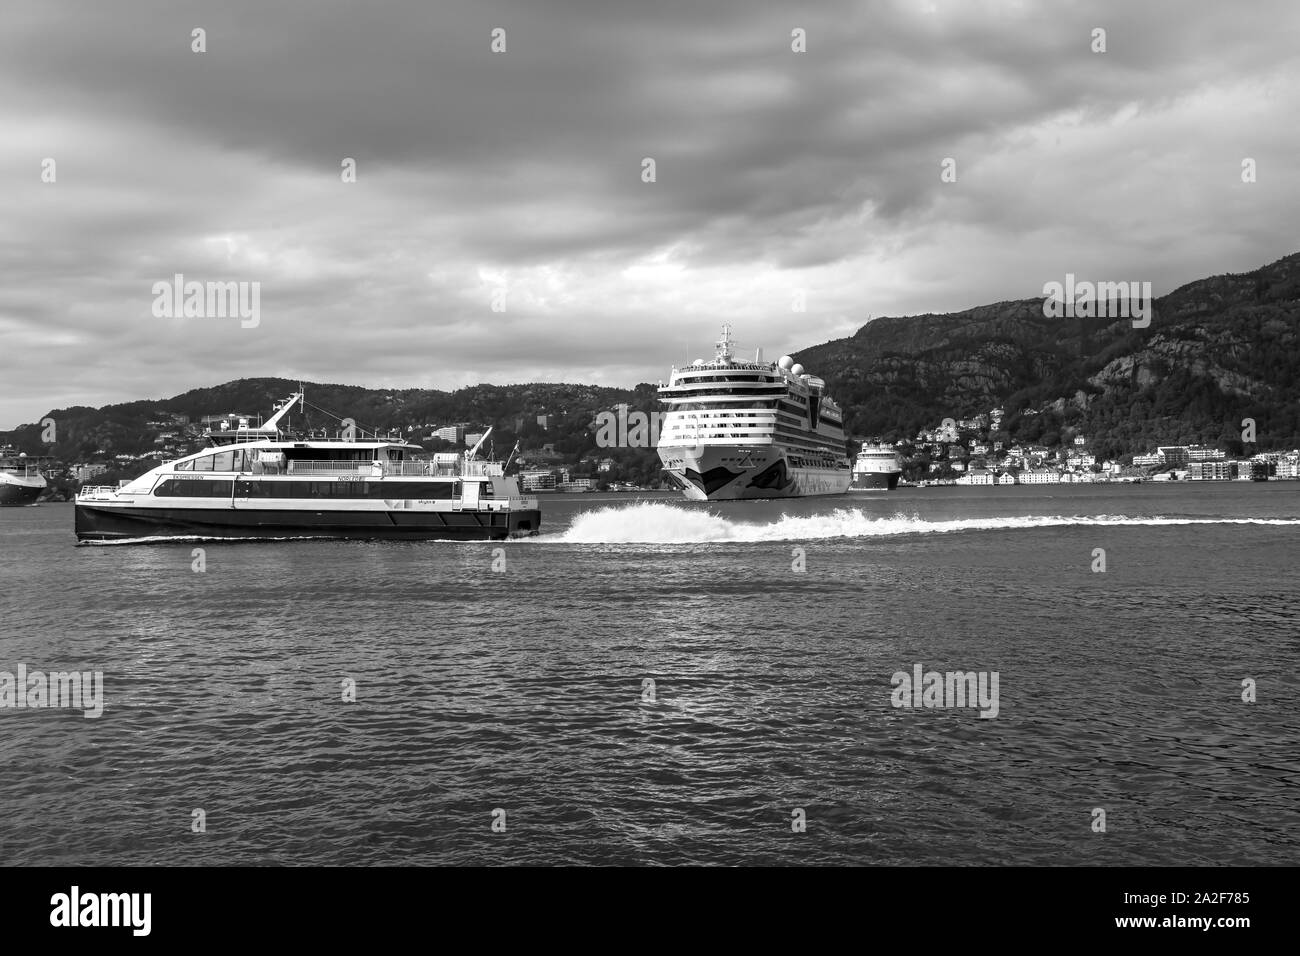 Crucero AIDAluna partiendo desde el puerto de Bergen, Noruega. Catamarán de alta velocidad para pasajeros Ekspressen pasando por delante. Foto de stock